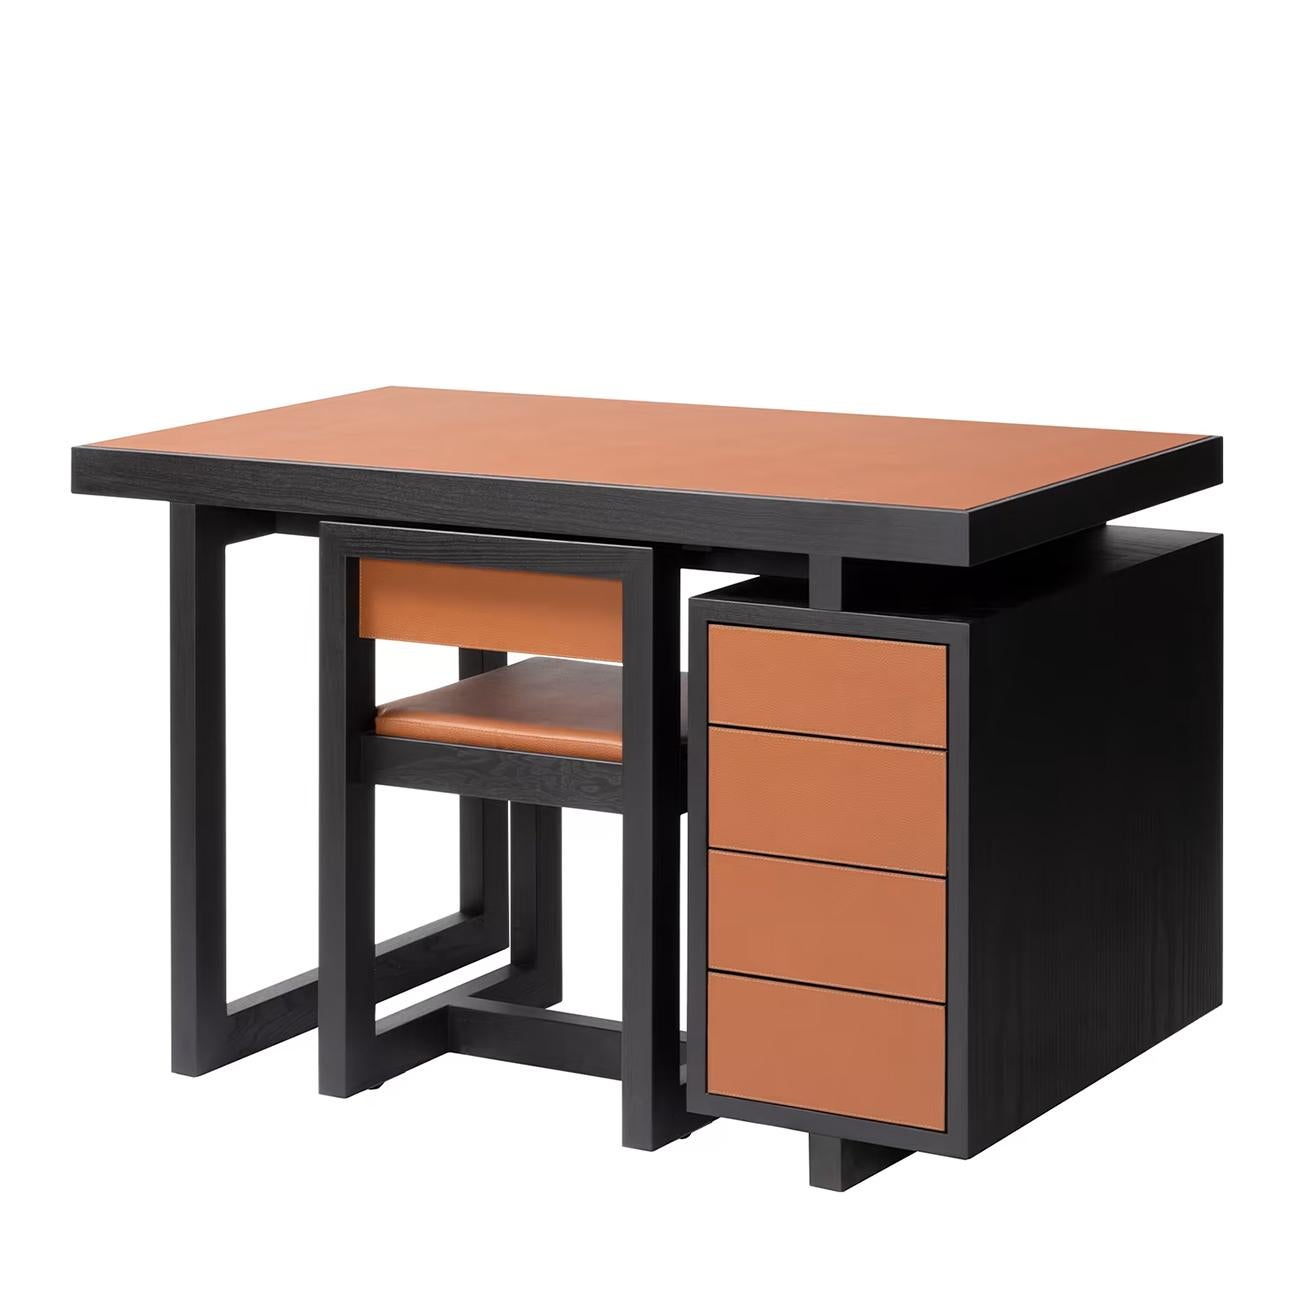 Ensemble bureau et chaise Towny avec toute la structure en solide
bois en finition teintée wengé, recouvert d'un revêtement de haute qualité
cuir véritable en finition souple de couleur orange. Bureau avec 4
tiroirs, y compris la chaise de bureau